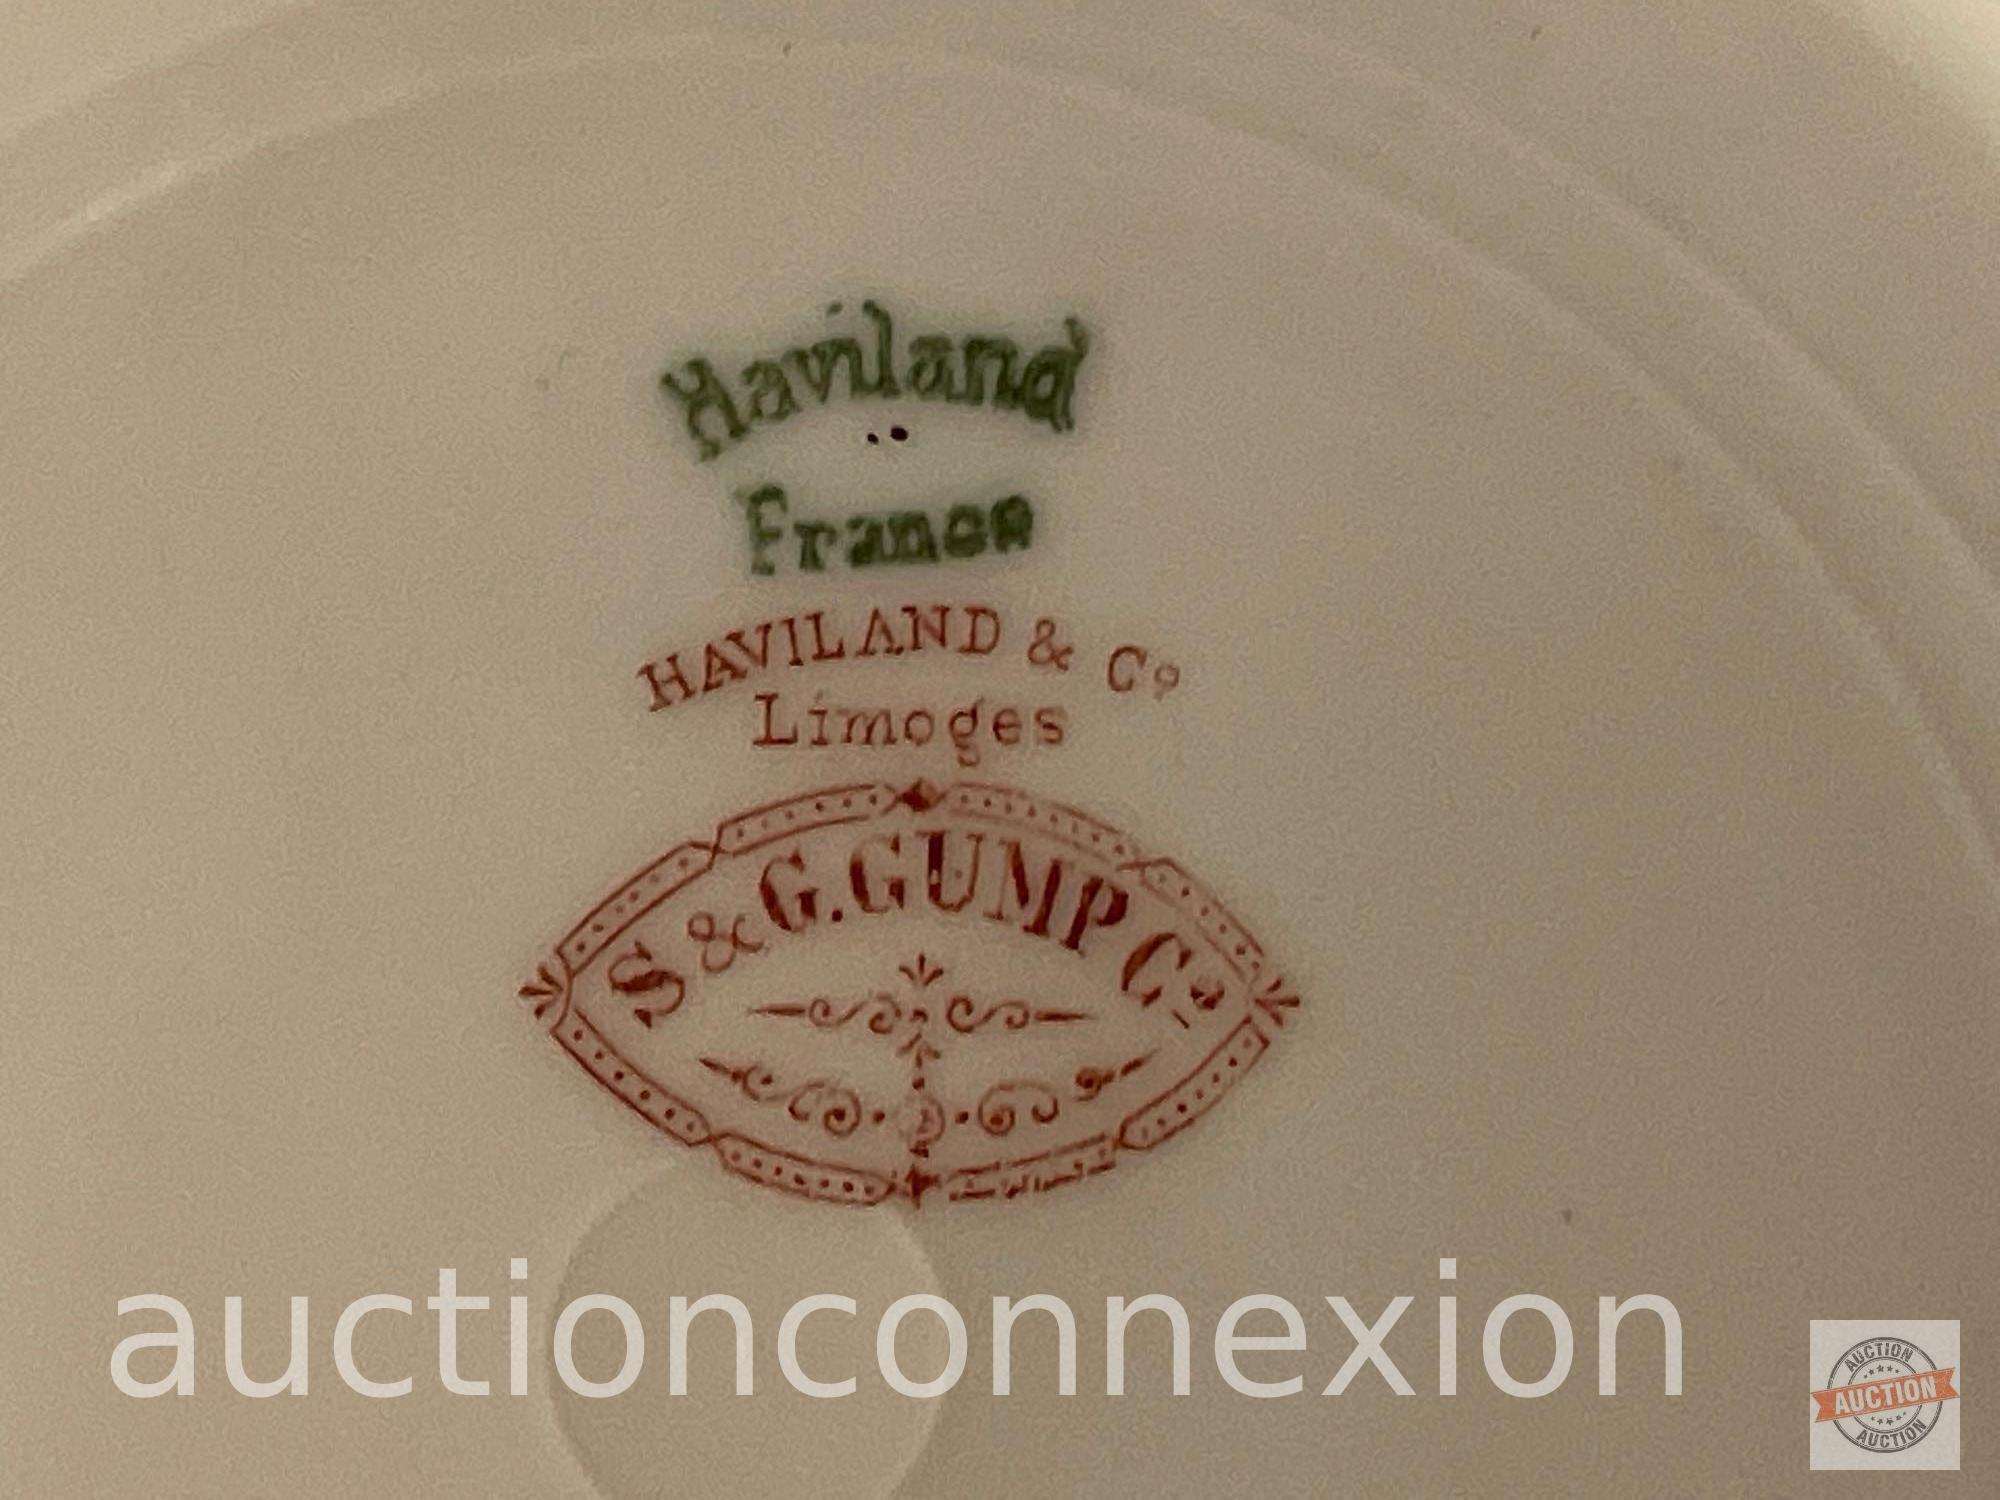 4 vintage dishes, 2 Haviland bone china bone dishes and 2 plates, France